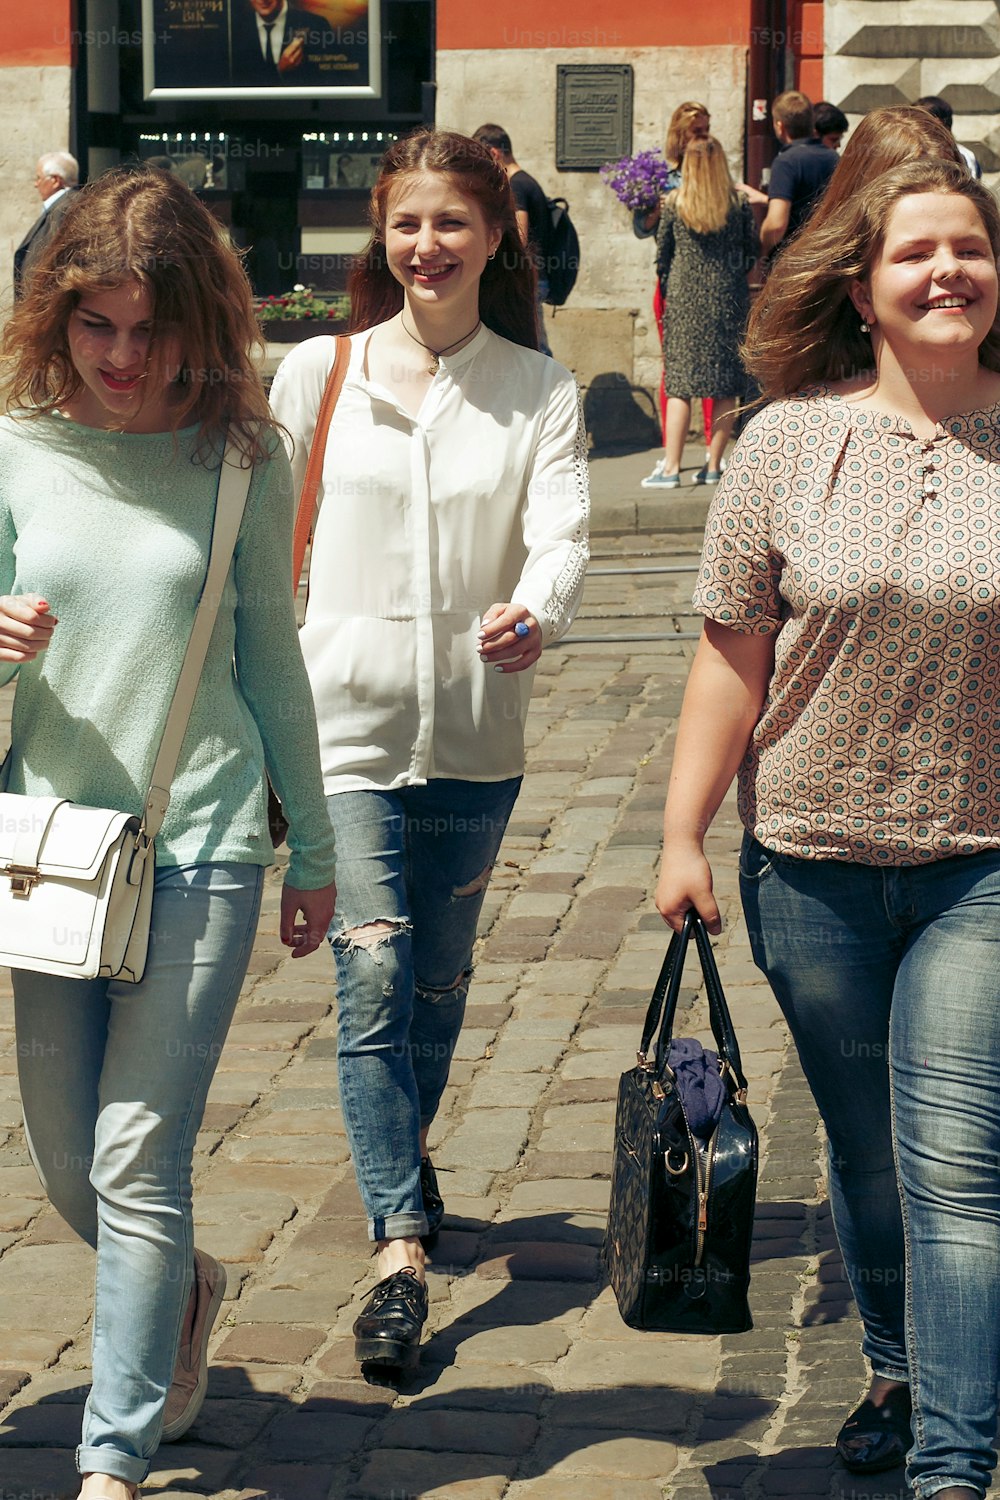 muitas mulheres jovens felizes andando falando no fundo da rua da cidade europeia velha, meninas hipster elegantes se divertindo, momentos de felicidade, conceito de amizade